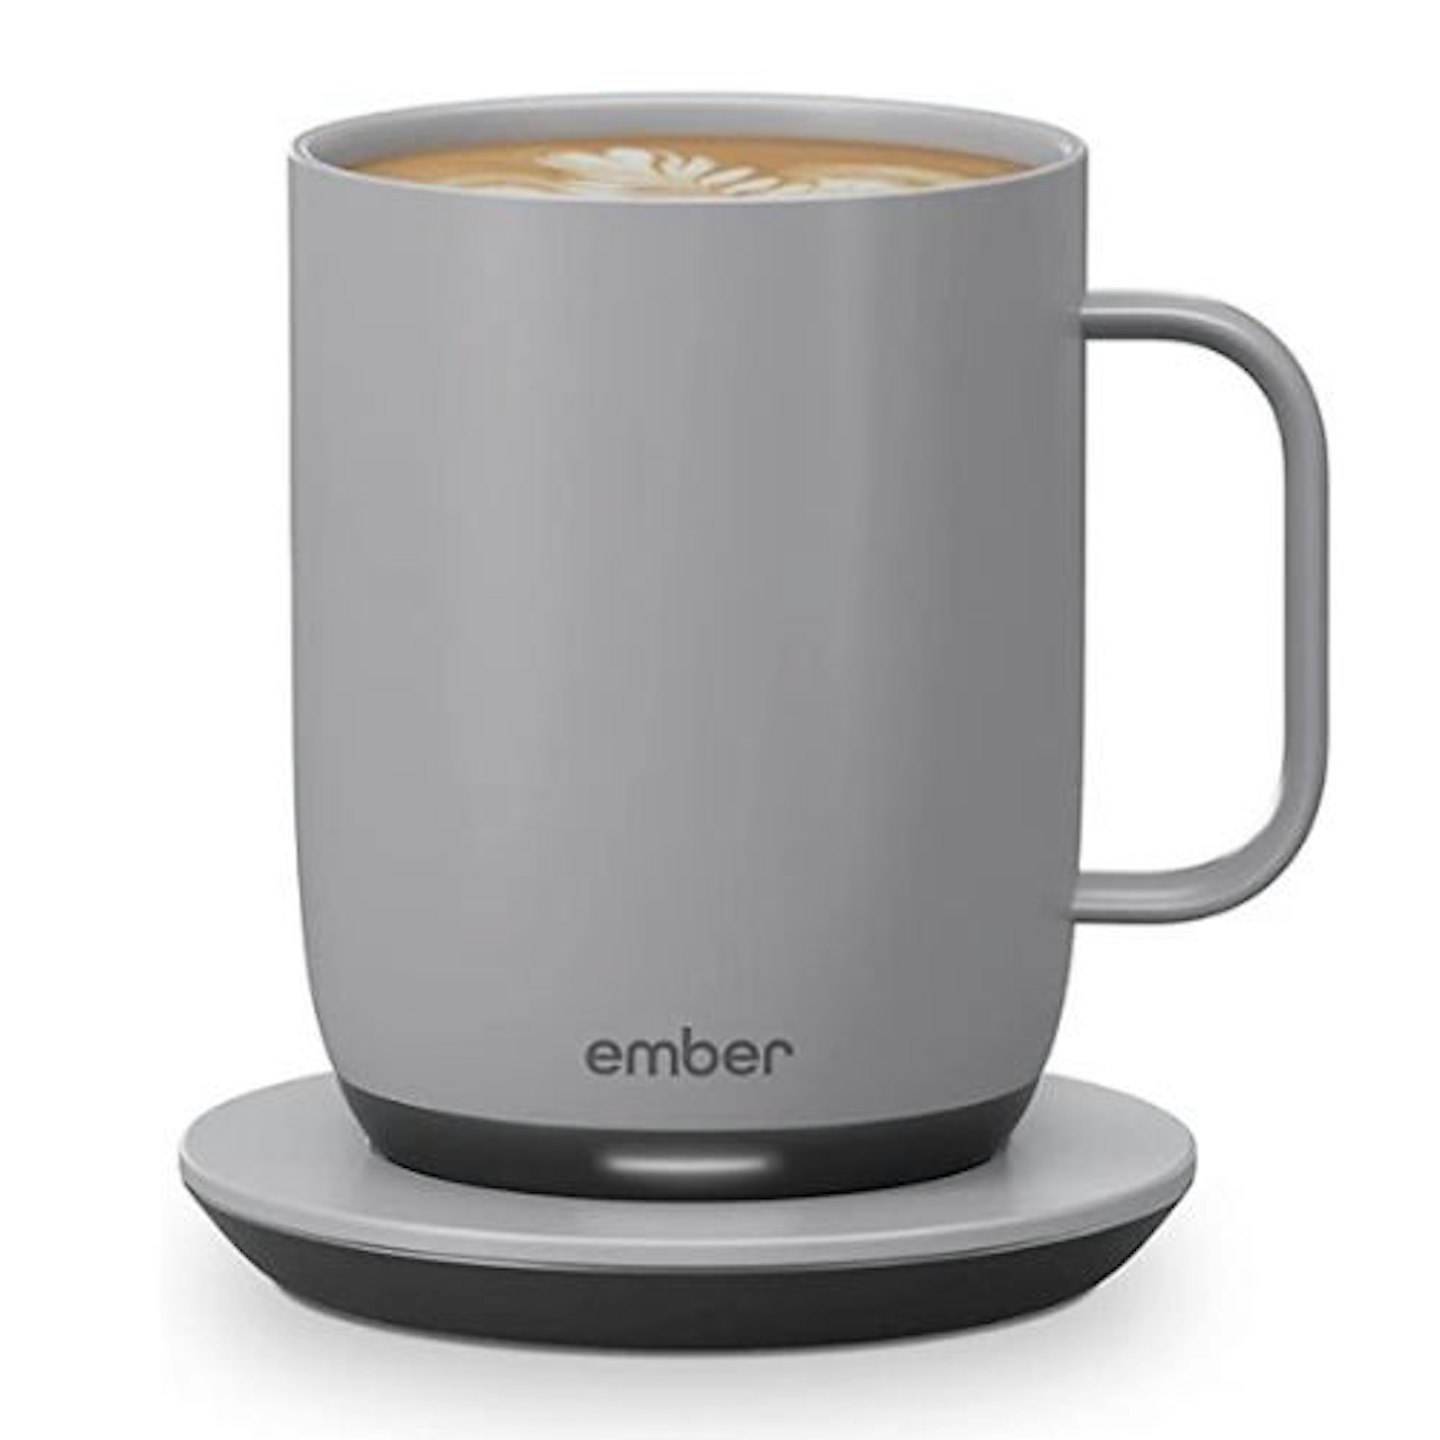 Ember New Temperature Control Smart Mug 2